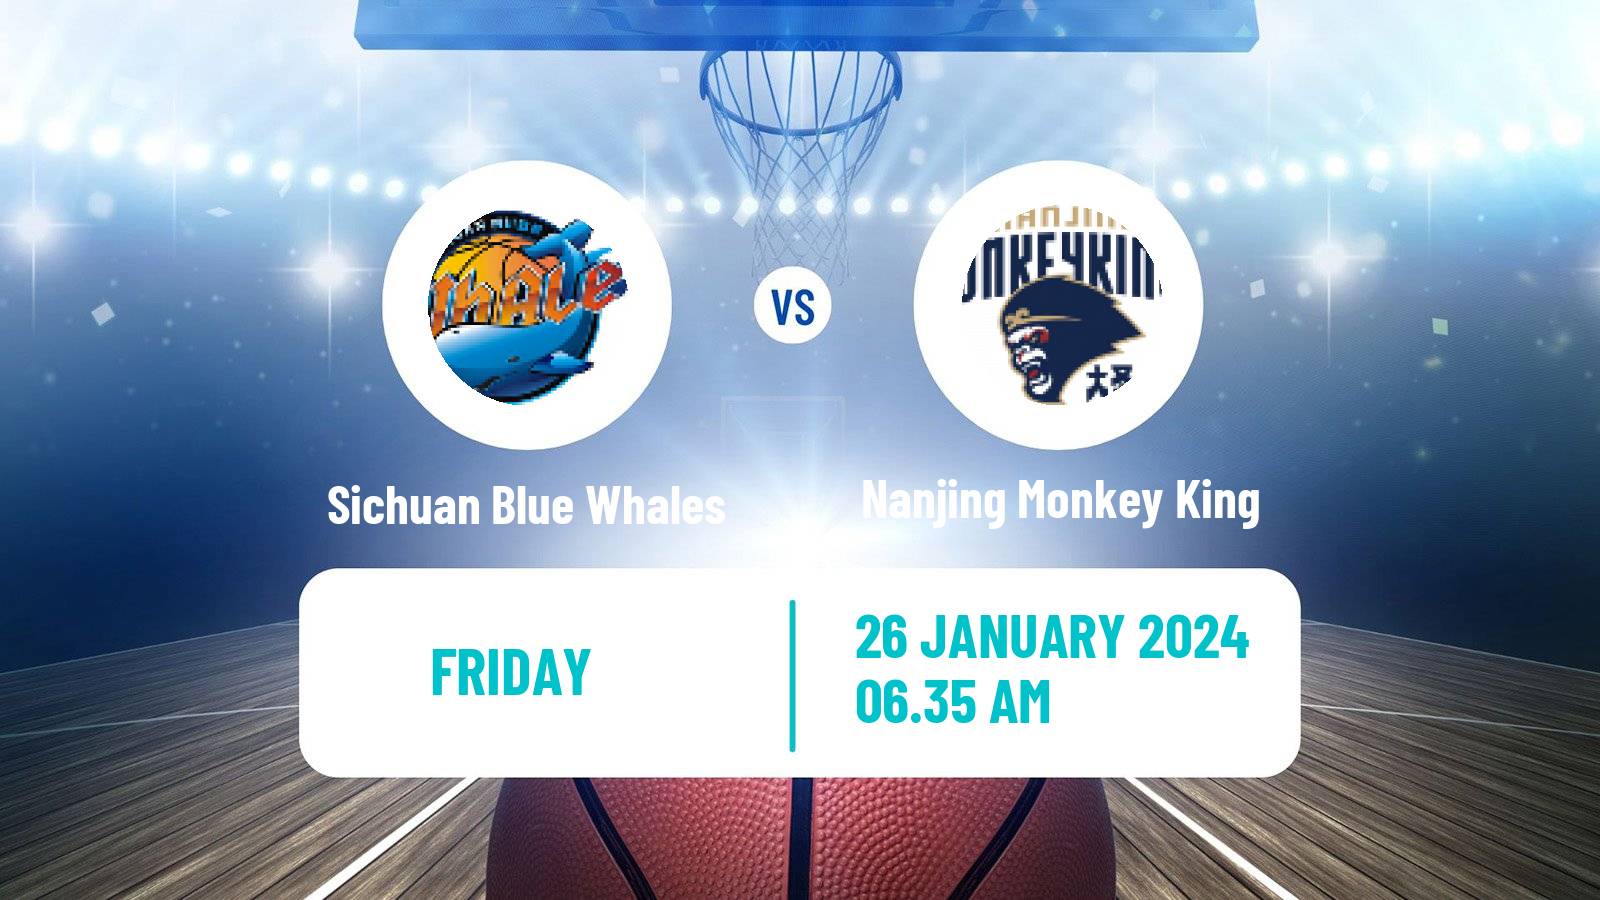 Basketball CBA Sichuan Blue Whales - Nanjing Monkey King